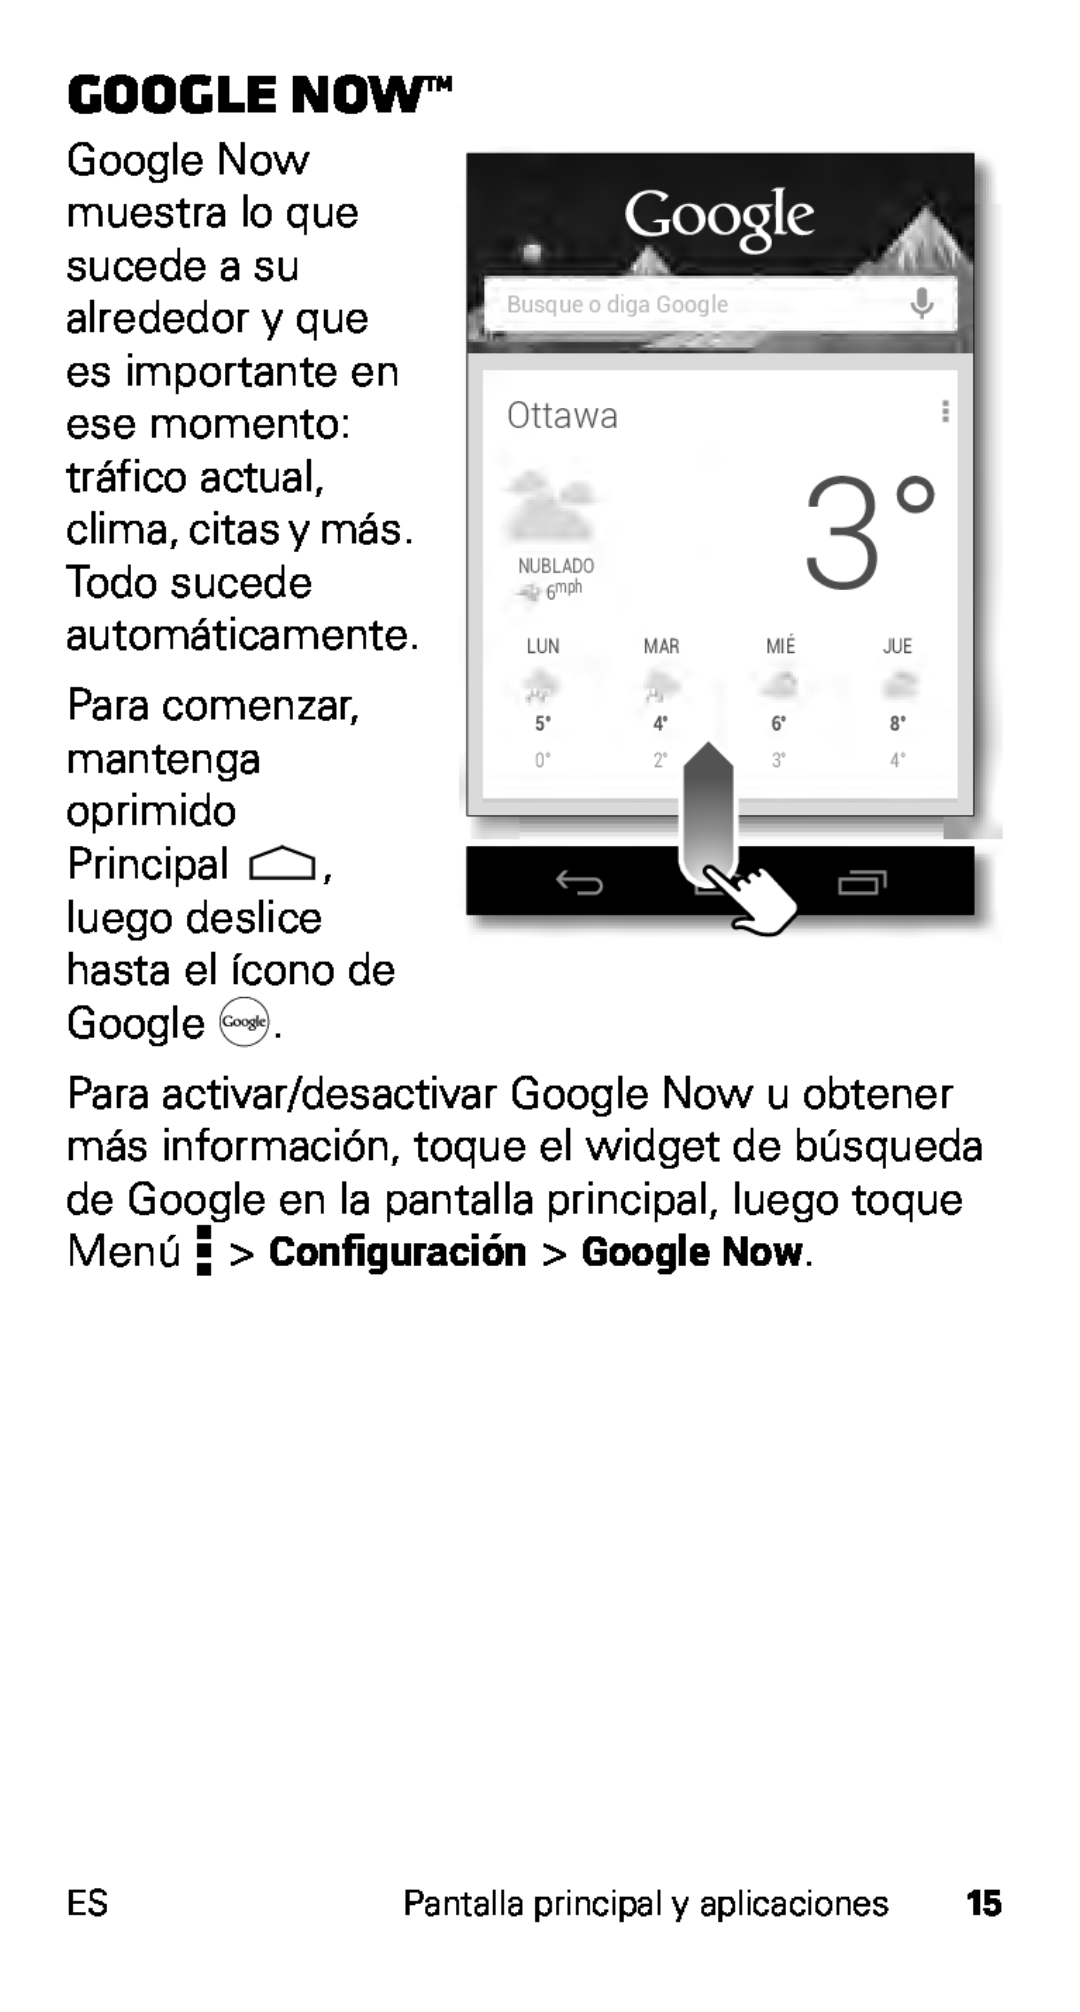 Motorola D1, XT915 manual Google Now, Principal , luego deslice hasta el ícono de Google 